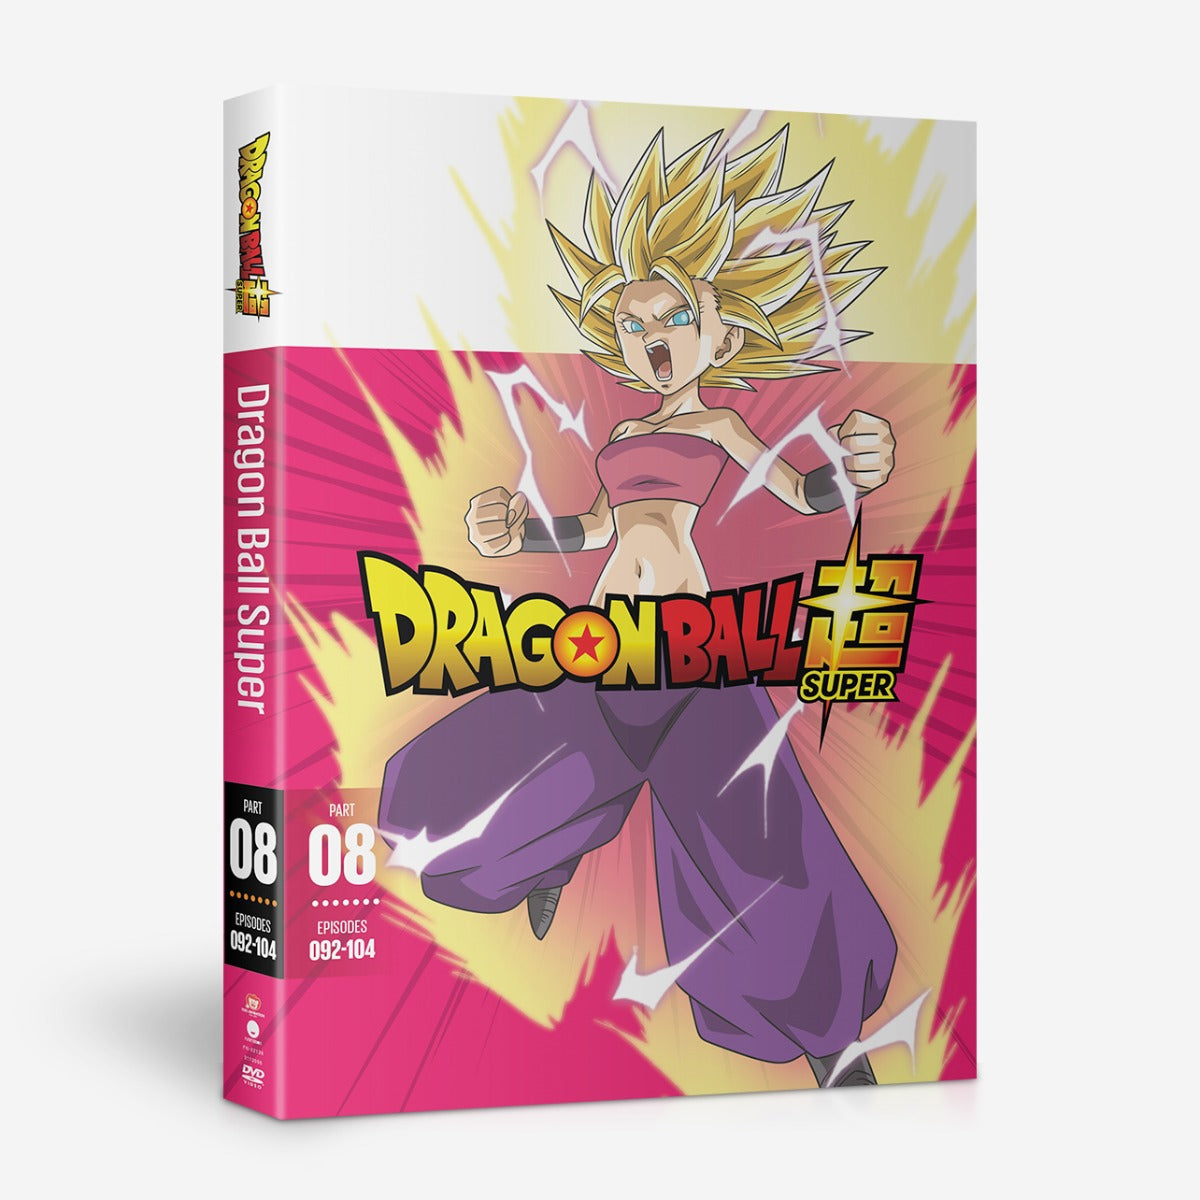 Dragon Ball Super Part 8 Dvd Crunchyroll Store